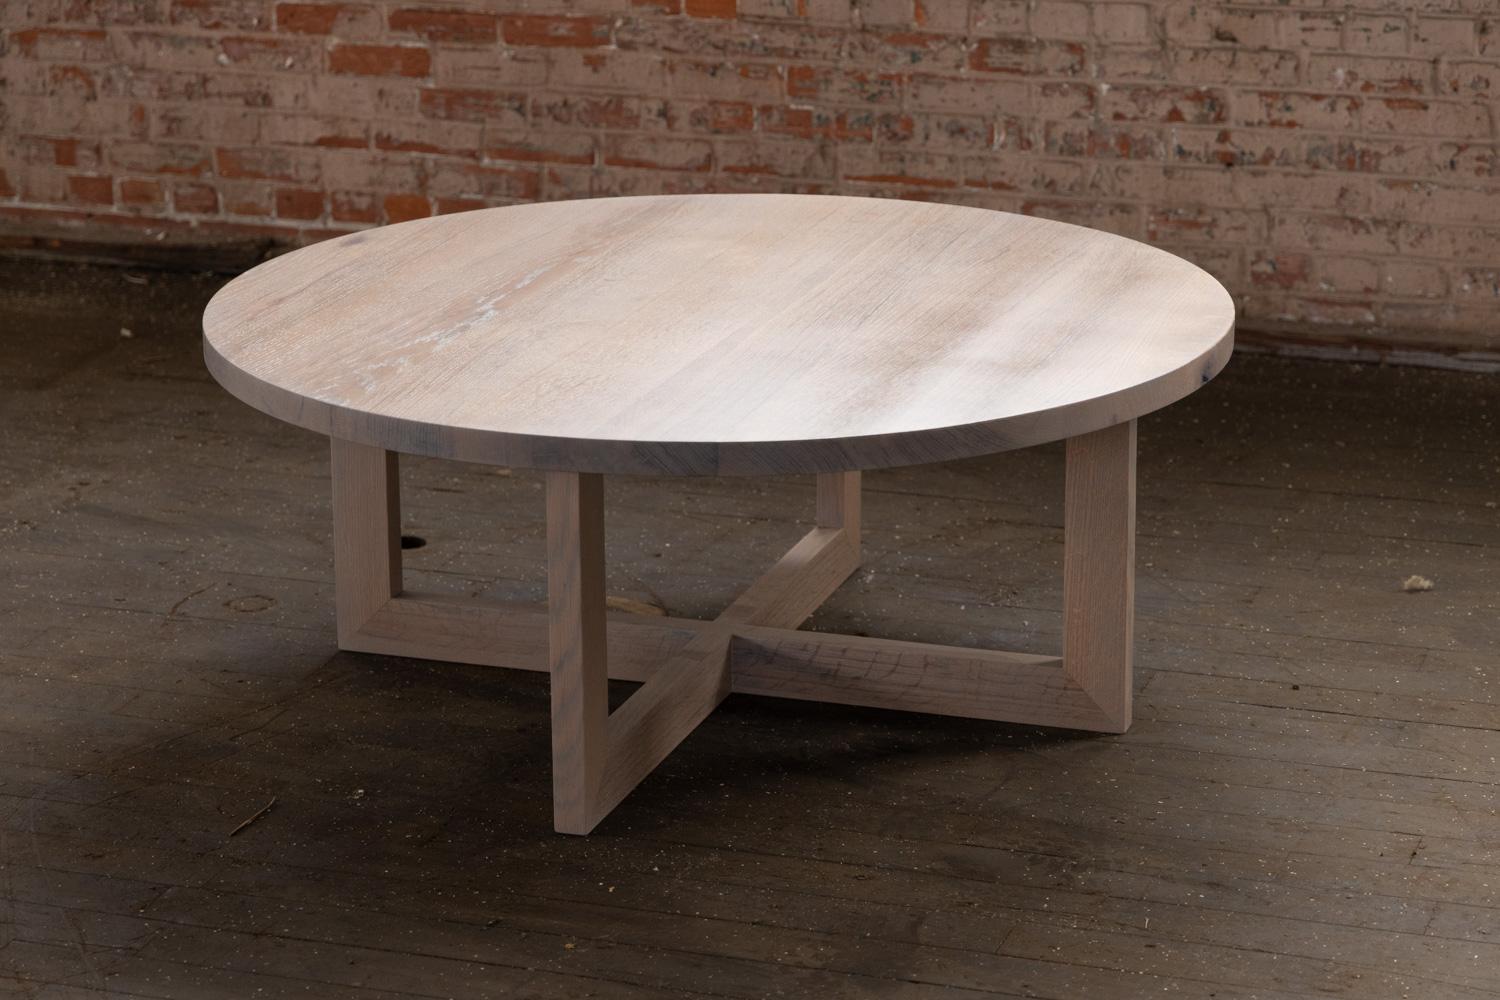 Le bois massif issu de la forêt urbaine confère à cette table basse ronde en chêne urbain gris un grain et une texture uniques. Un diamètre de 48 pouces offre une grande surface. La couleur grise et le grain expressif donnent une silhouette définie